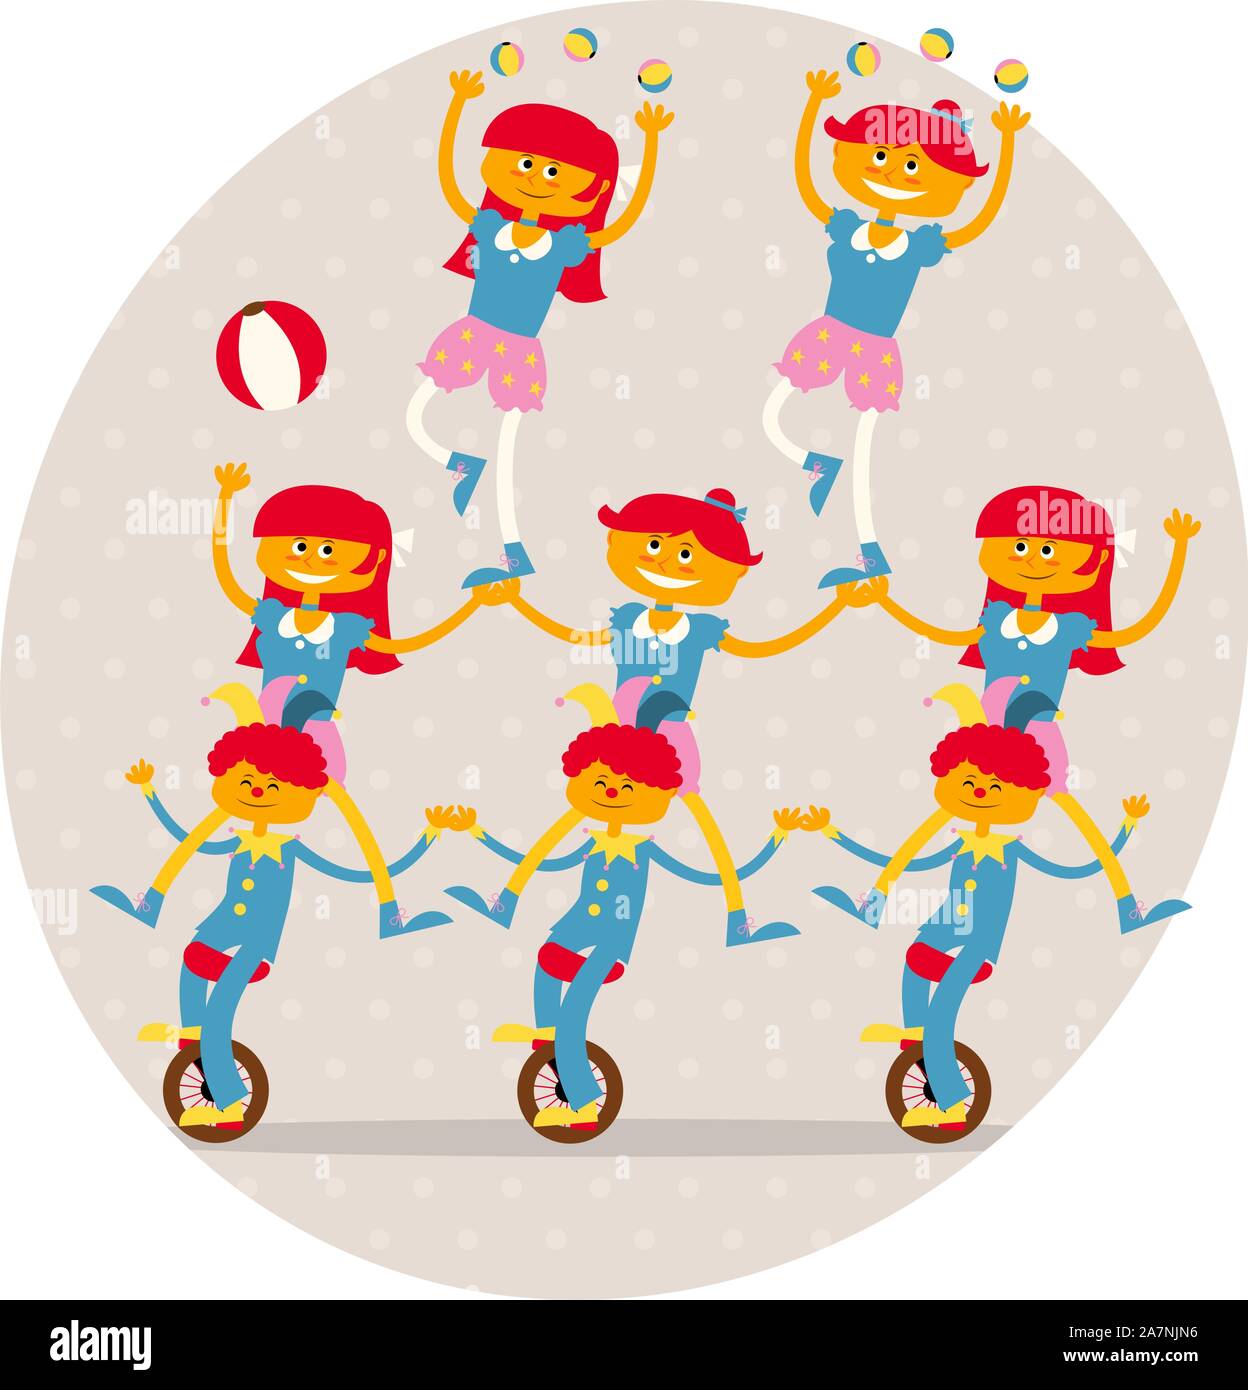 3 garçons et 5 filles acrobates faire un numéro acrobatique dont monocycle, balles et un équilibre d'illustration vectorielle de la danse. Illustration de Vecteur